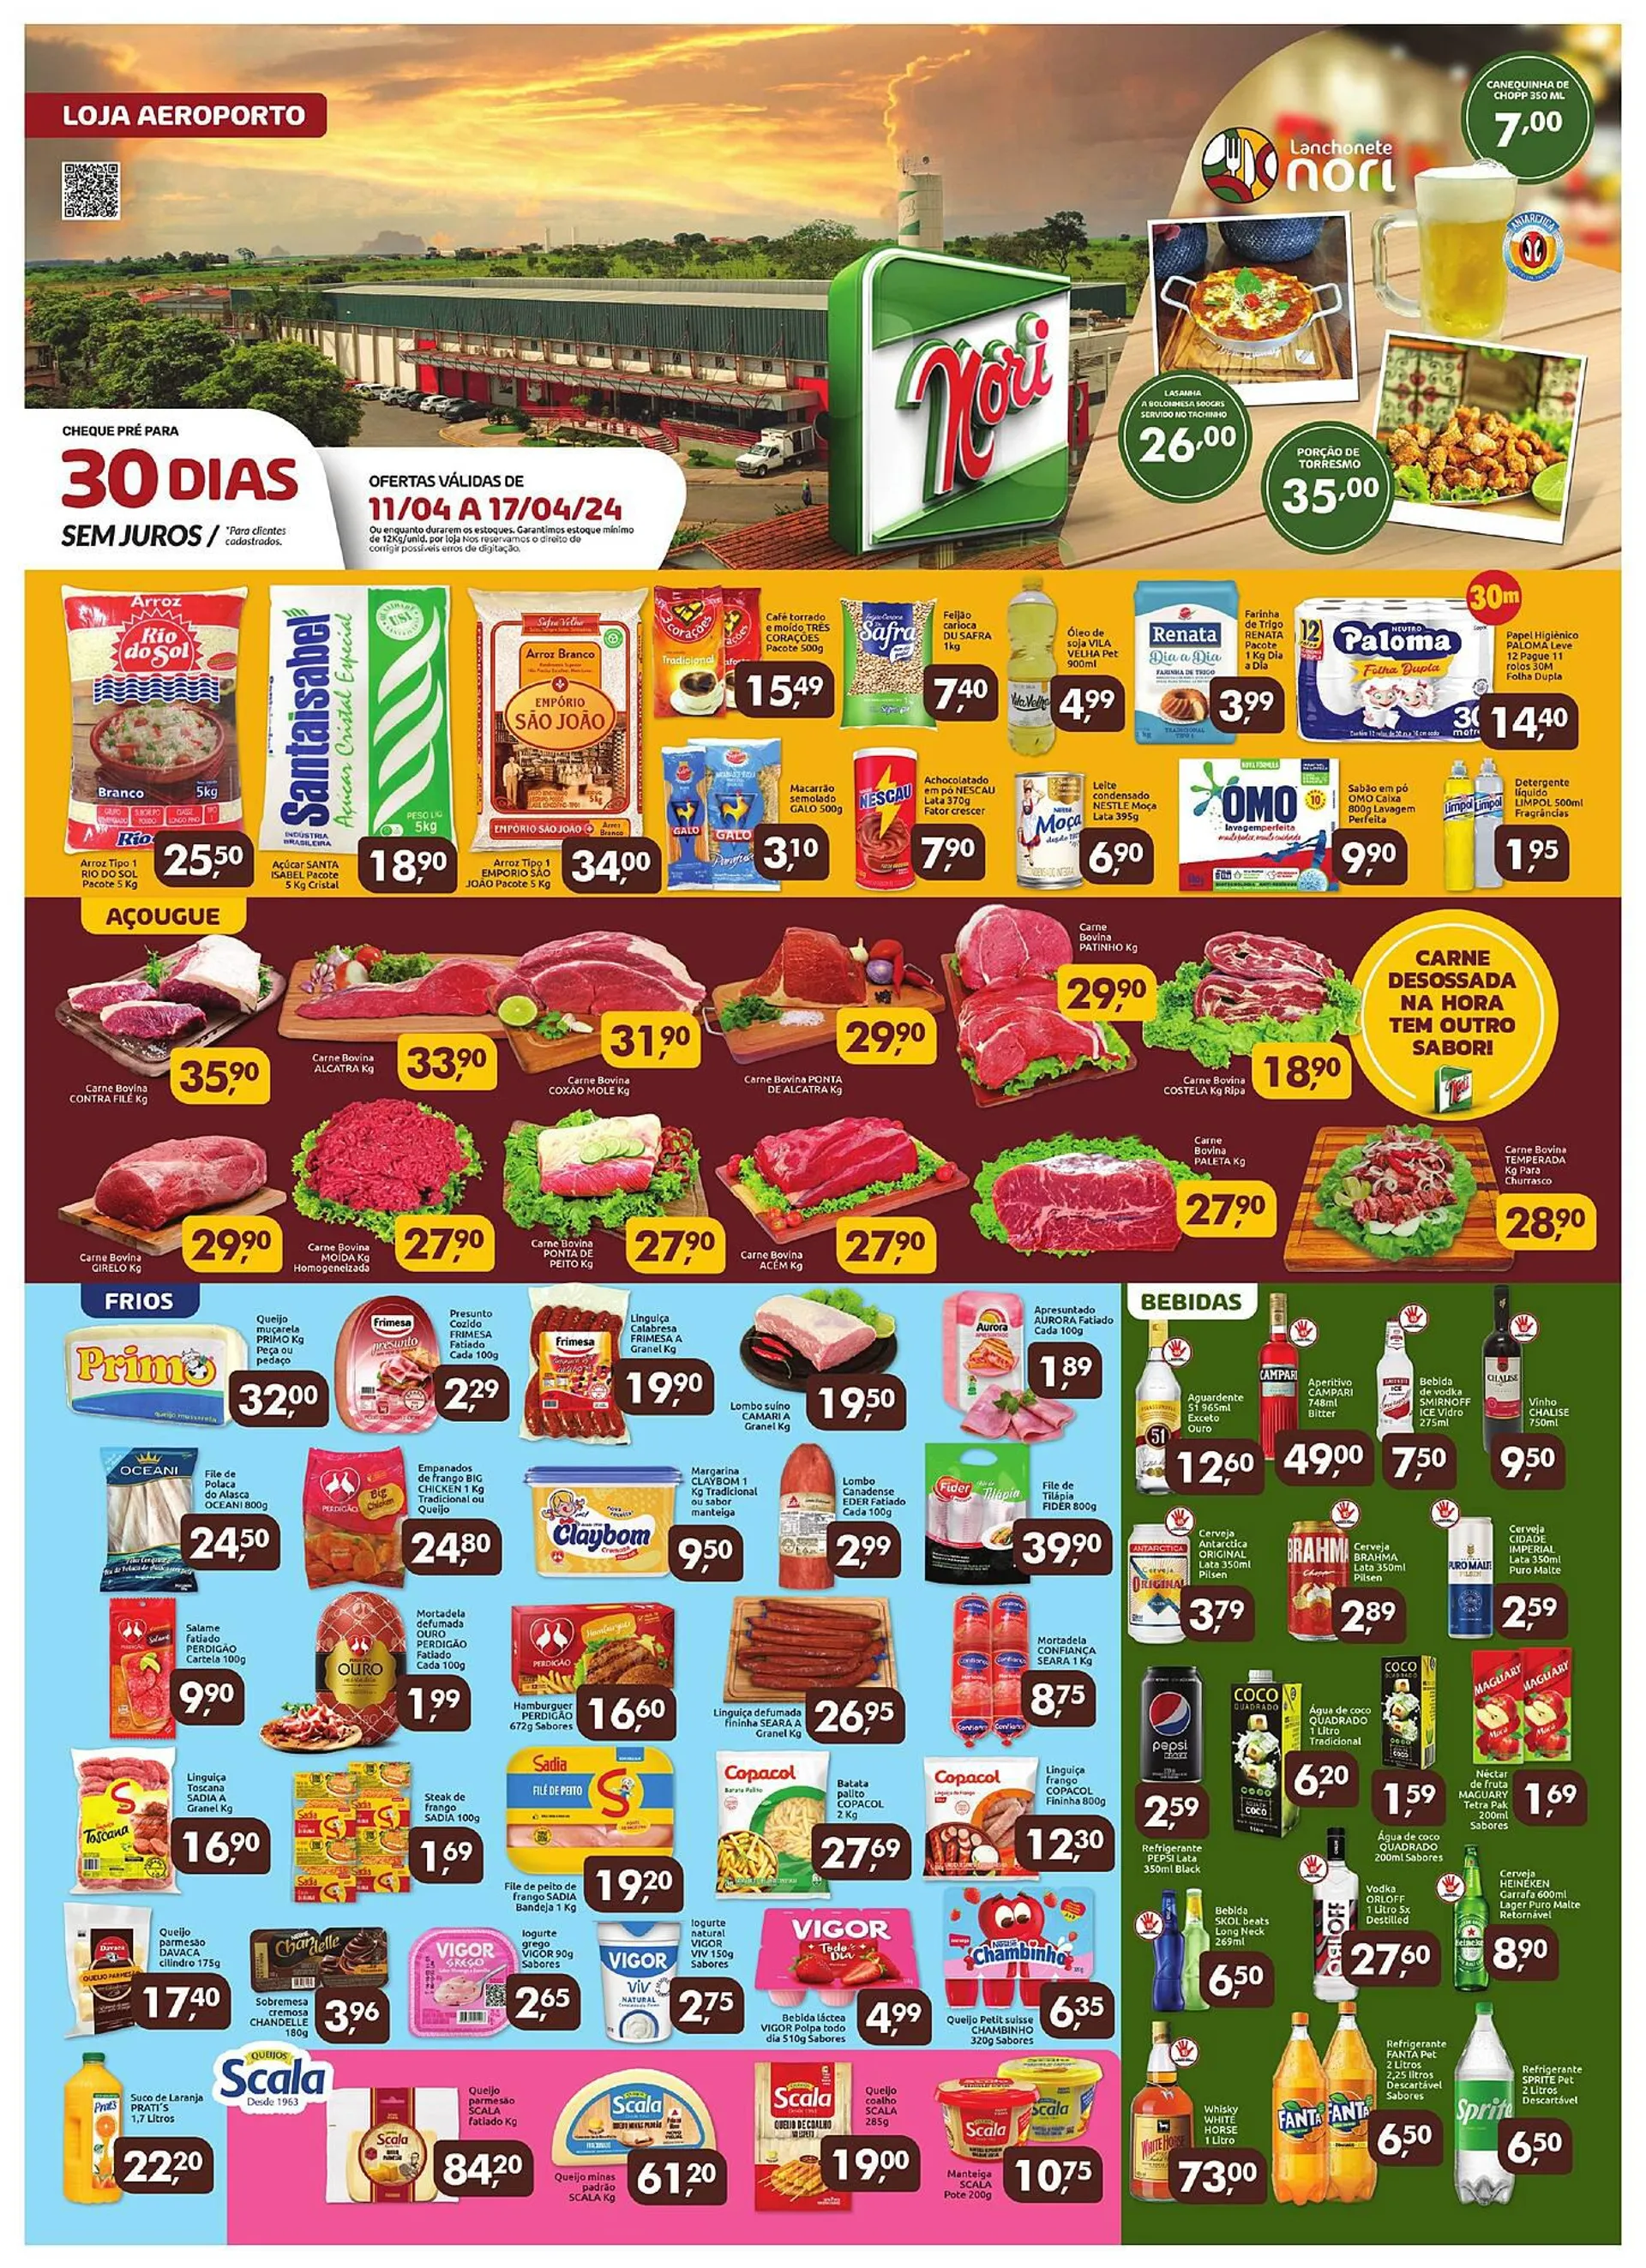 Encarte de Catálogo Supermercados Nori 11 de abril até 17 de abril 2024 - Pagina 